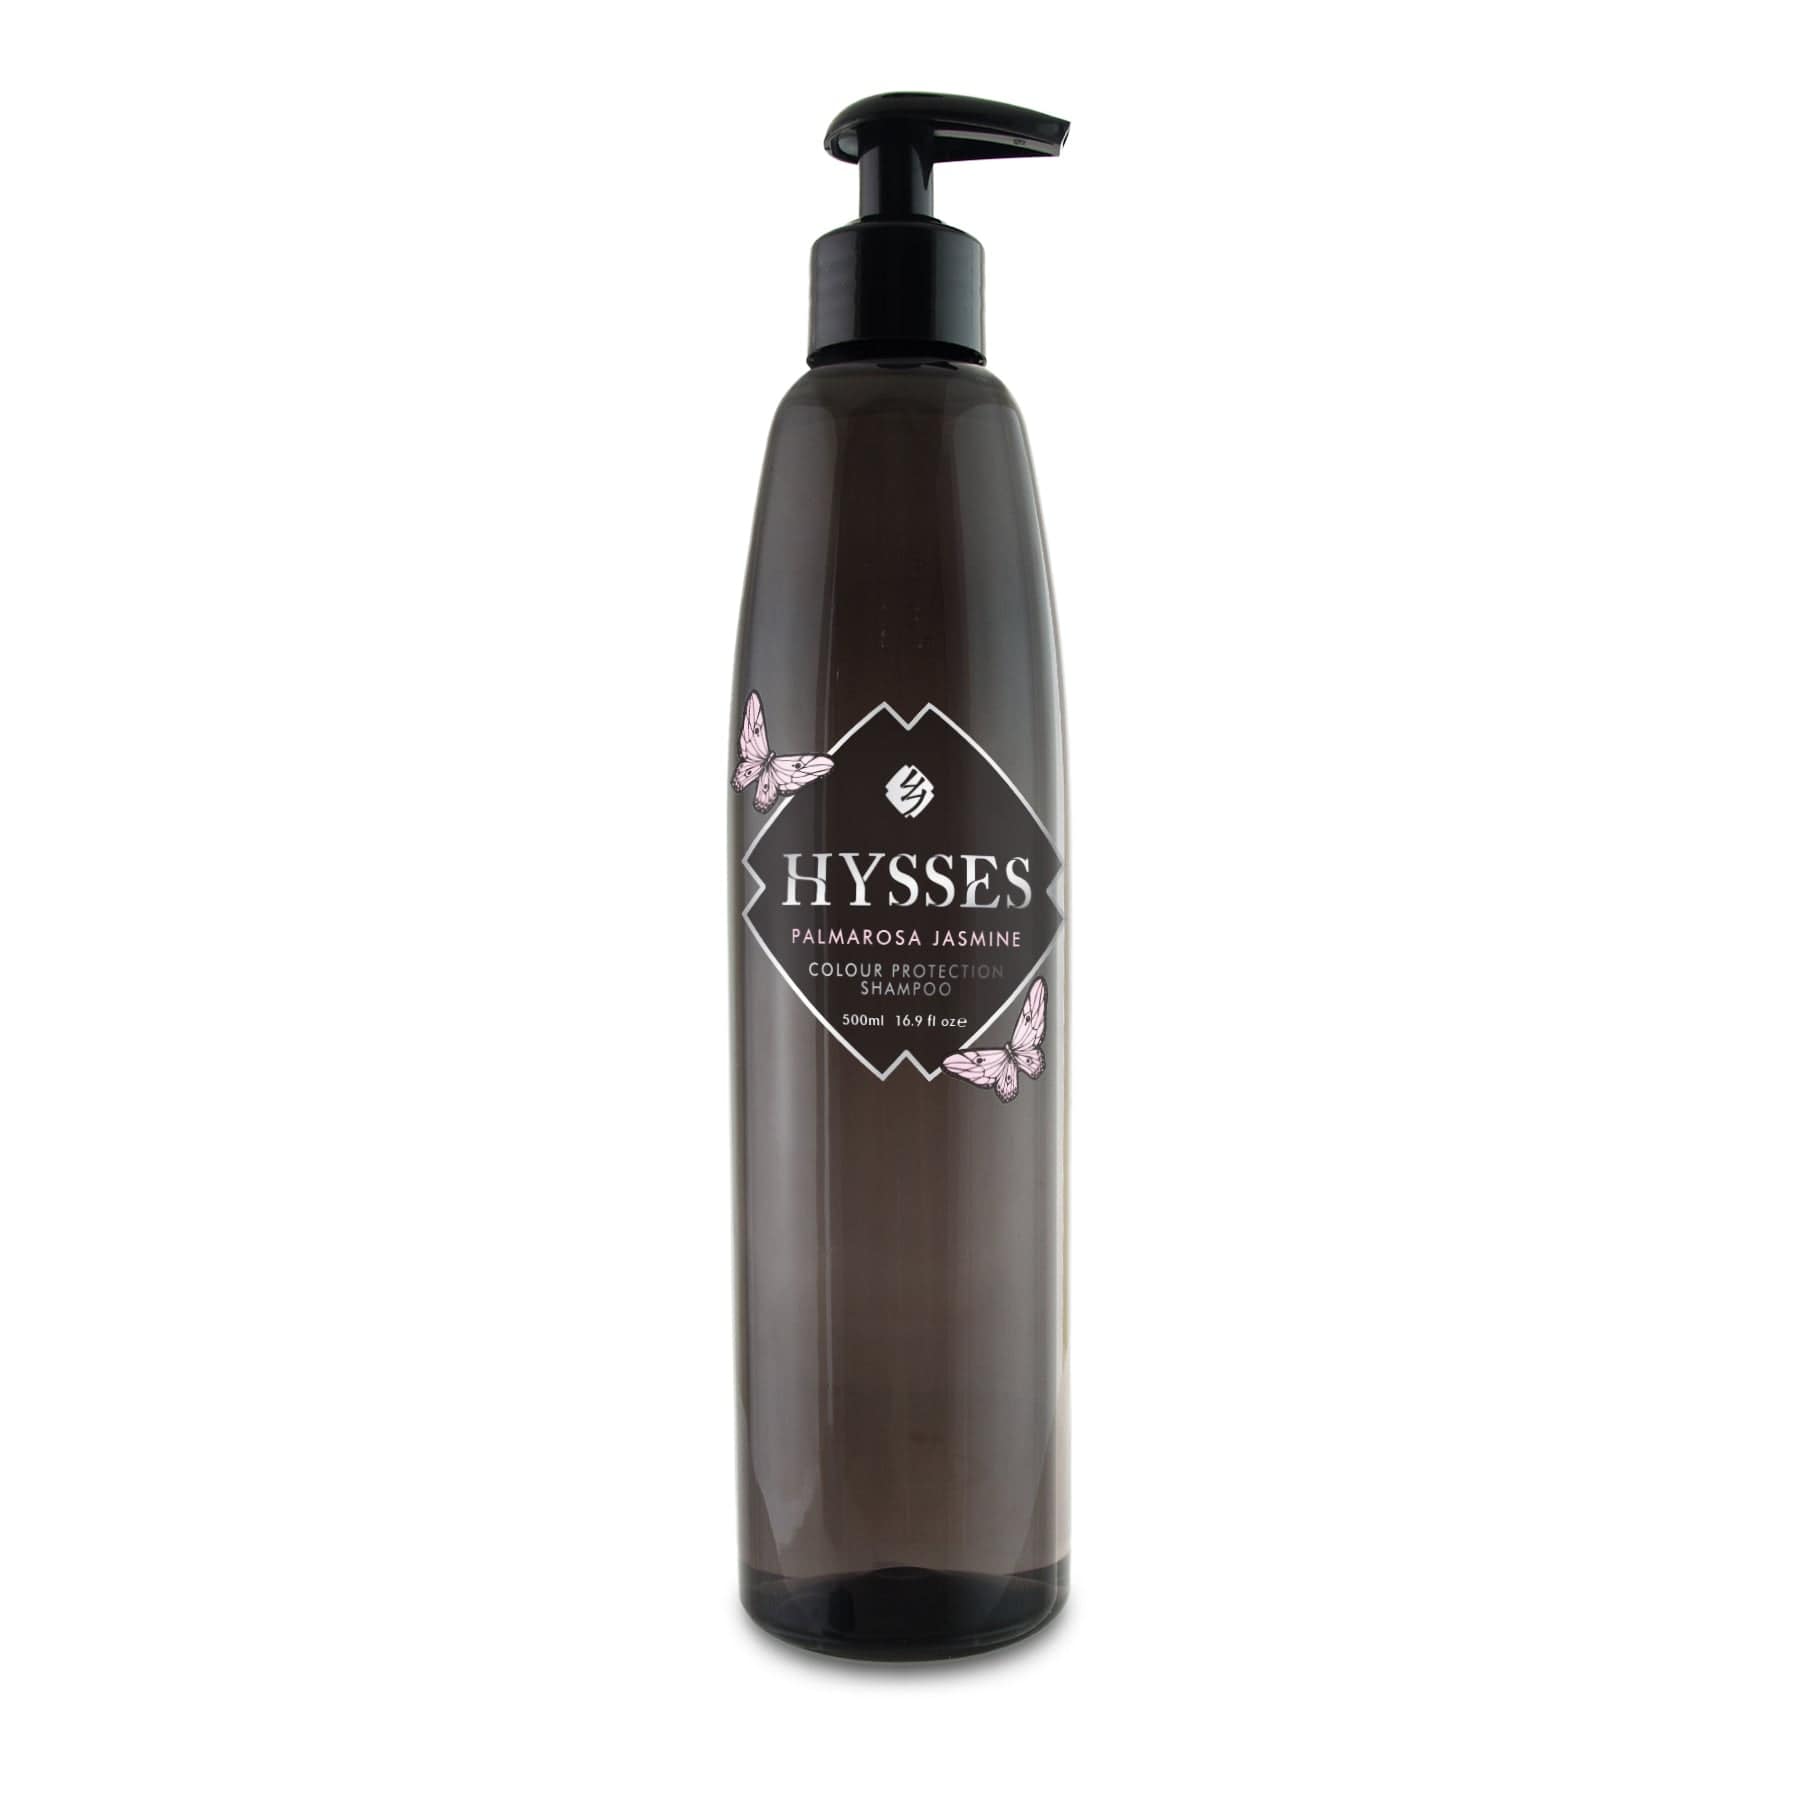 Hysses Hair Care 500ml Colour Protection Shampoo, Palmarosa Jasmine